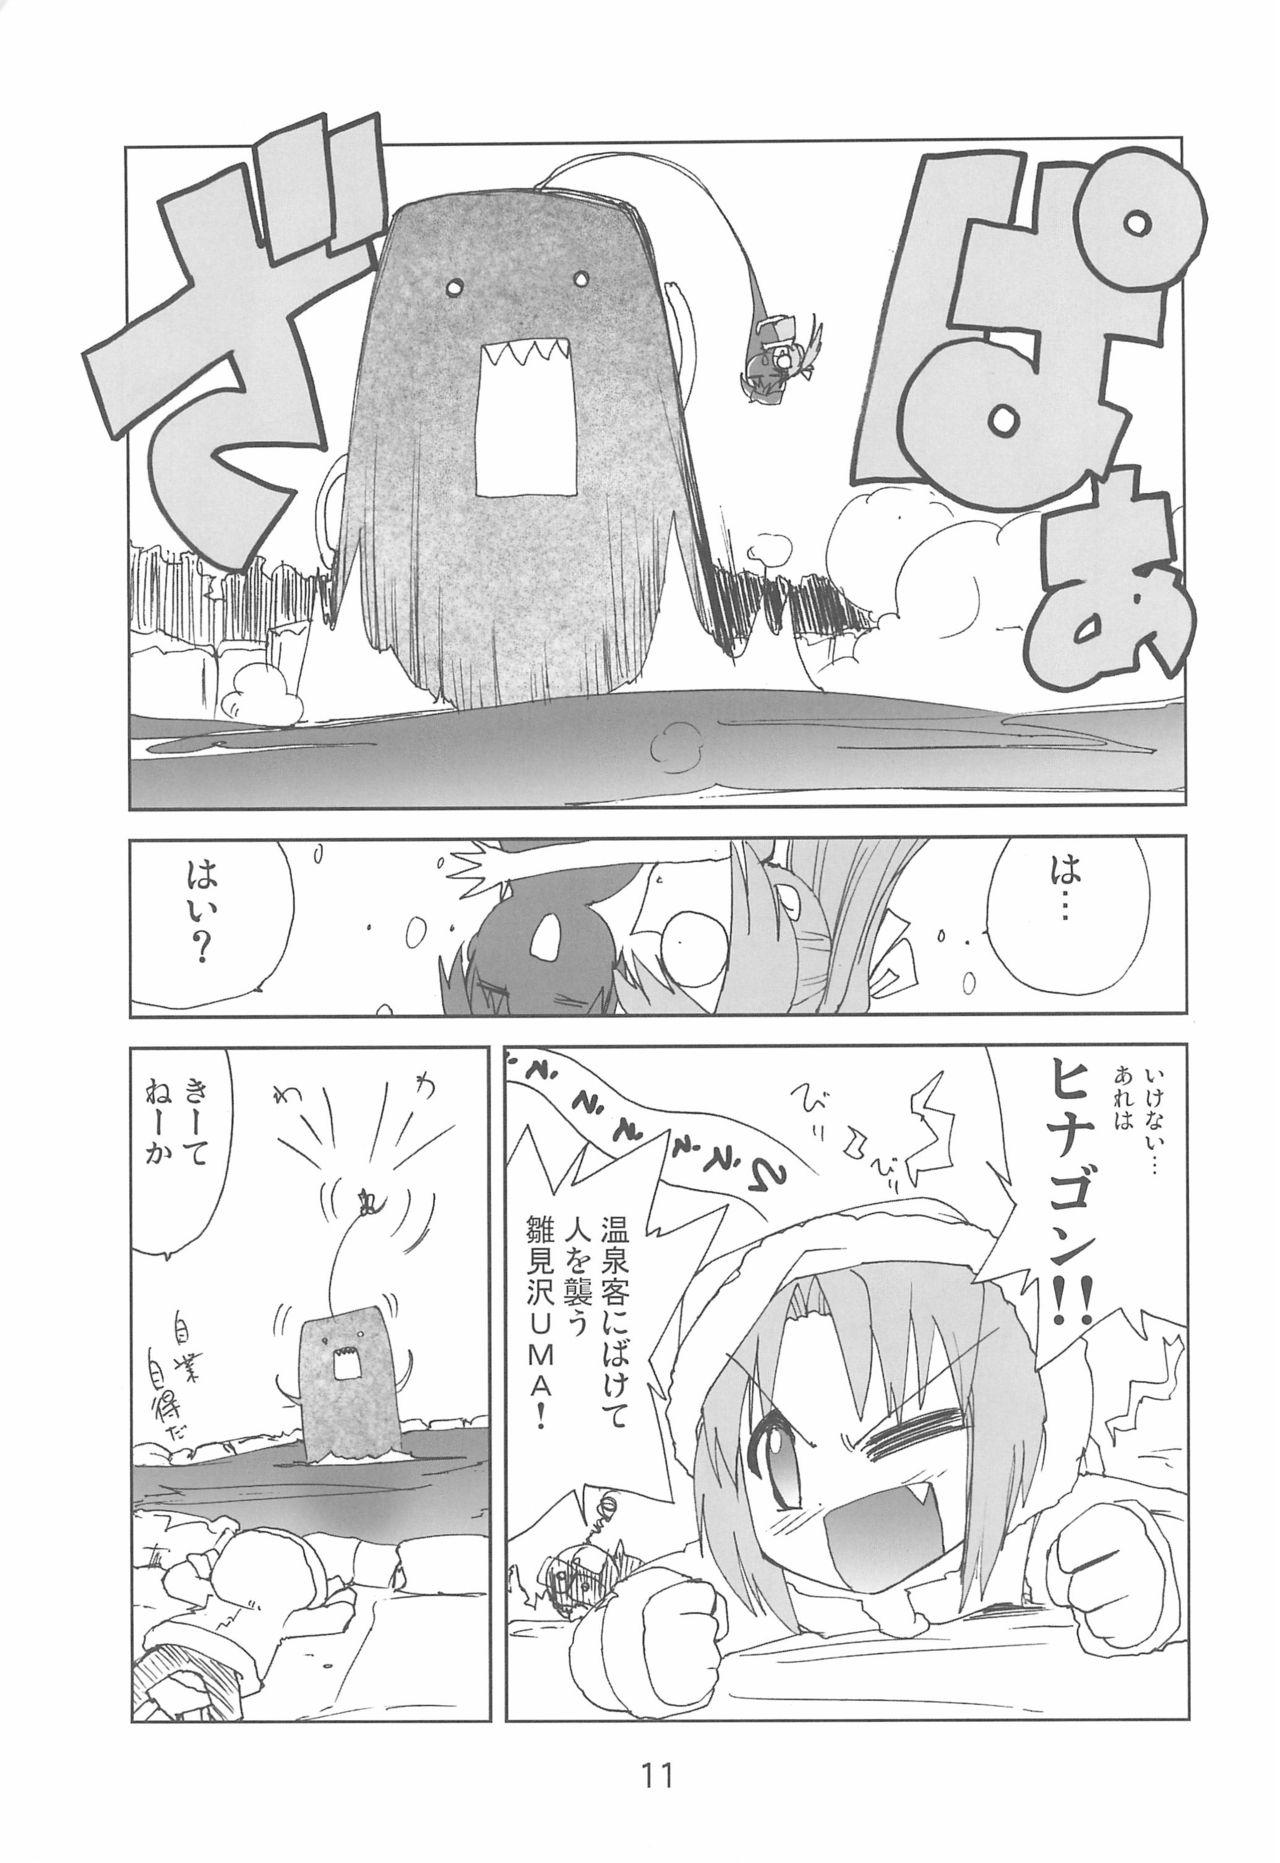 Twinkstudios Fugurashi no Naku Koro ni Kai - Higurashi no naku koro ni | when they cry Para - Page 11